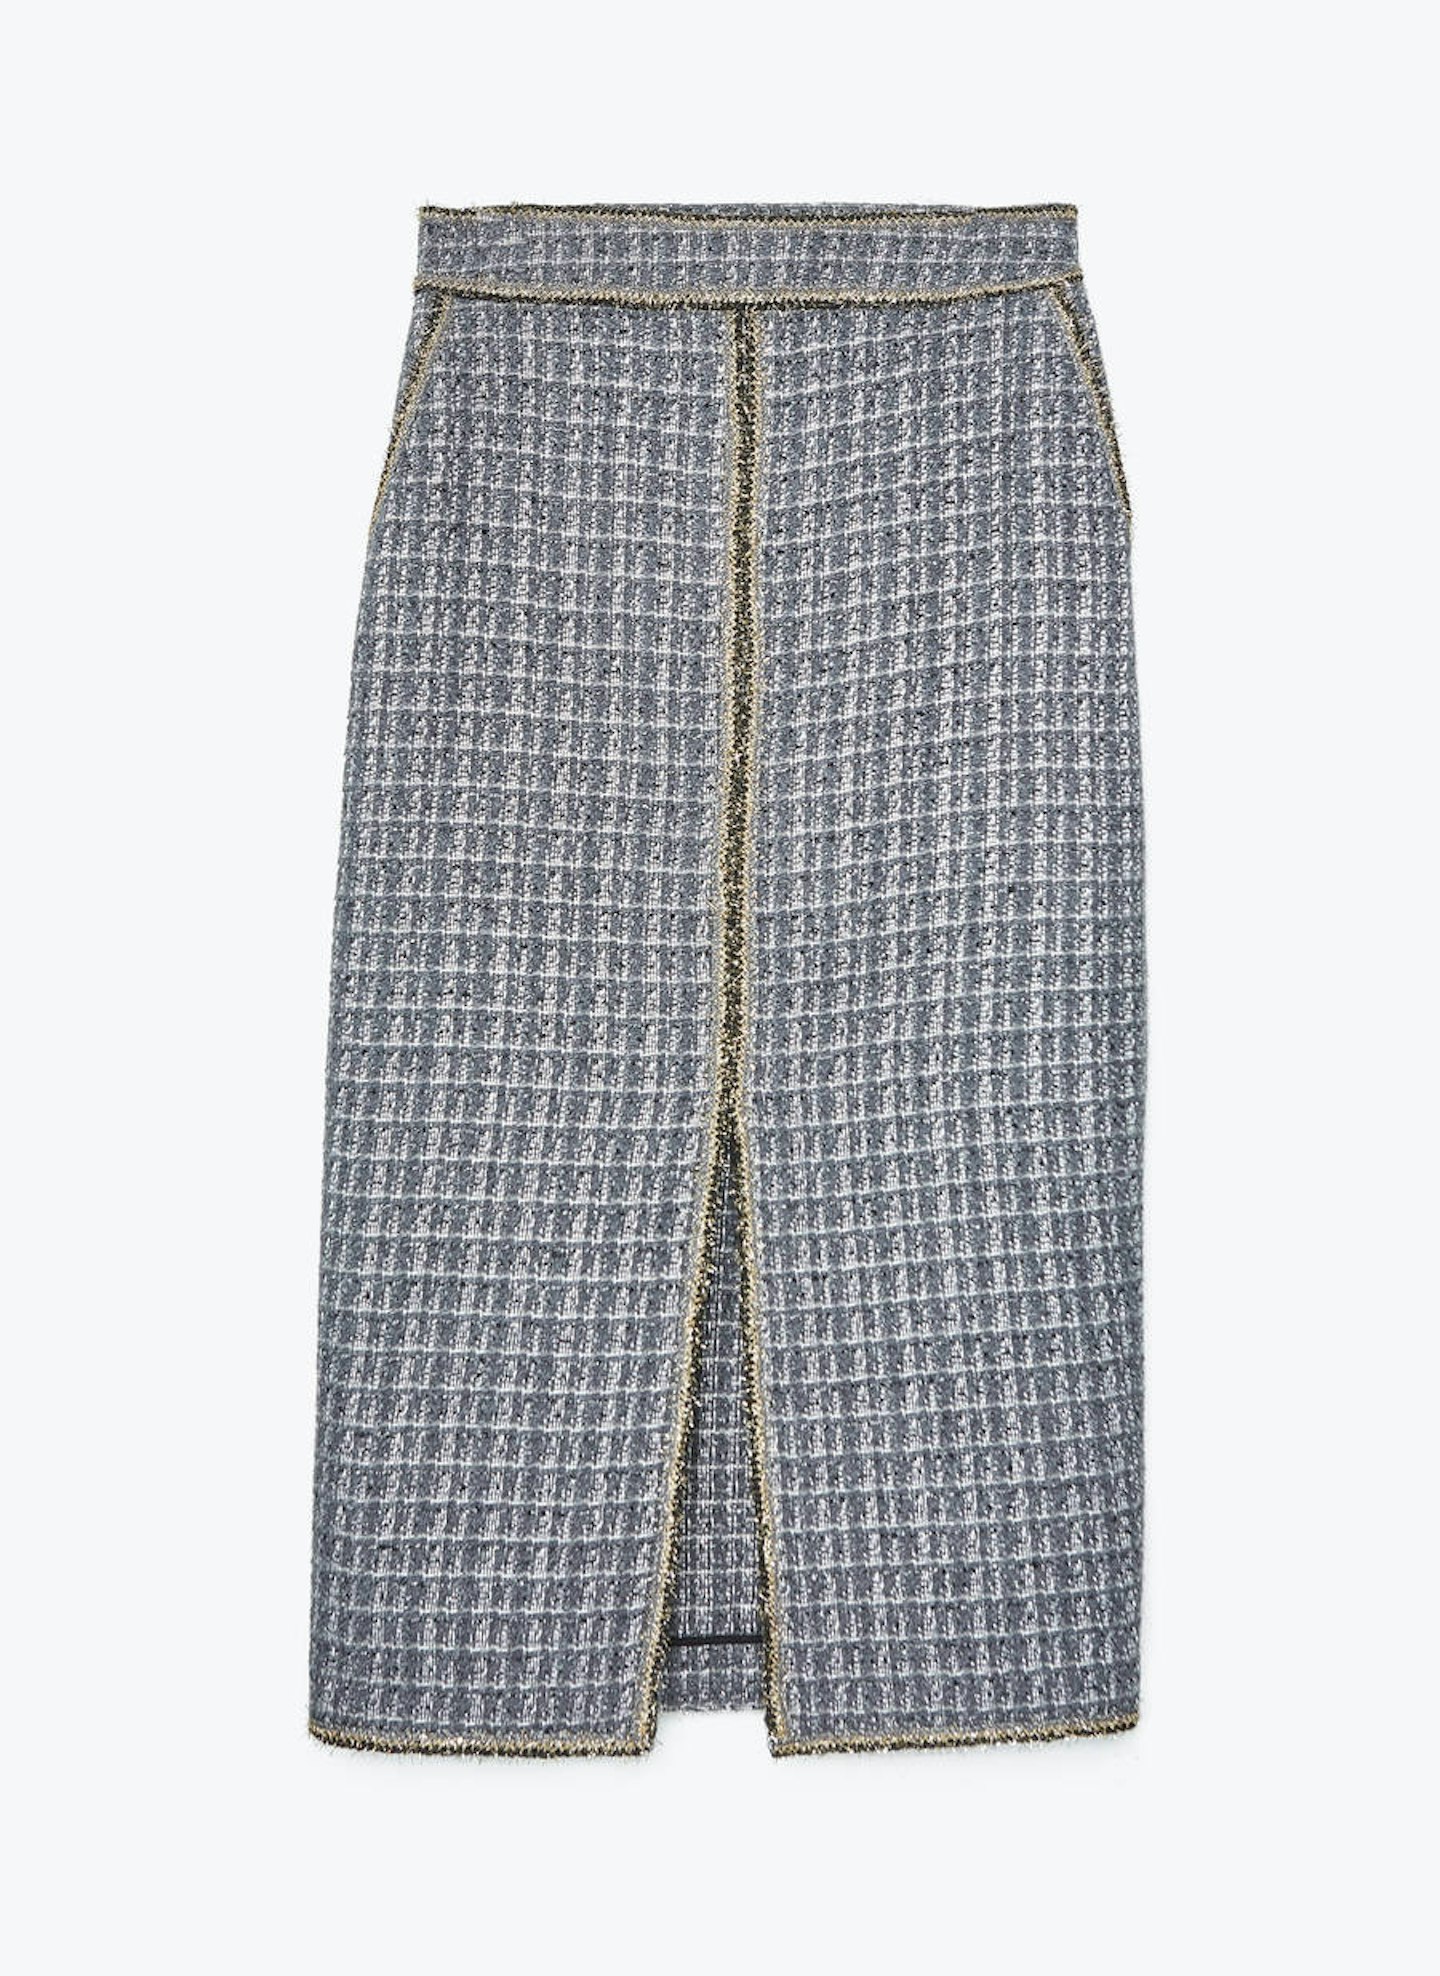 Uterqu00fce, Embellished Skirt, £59.90